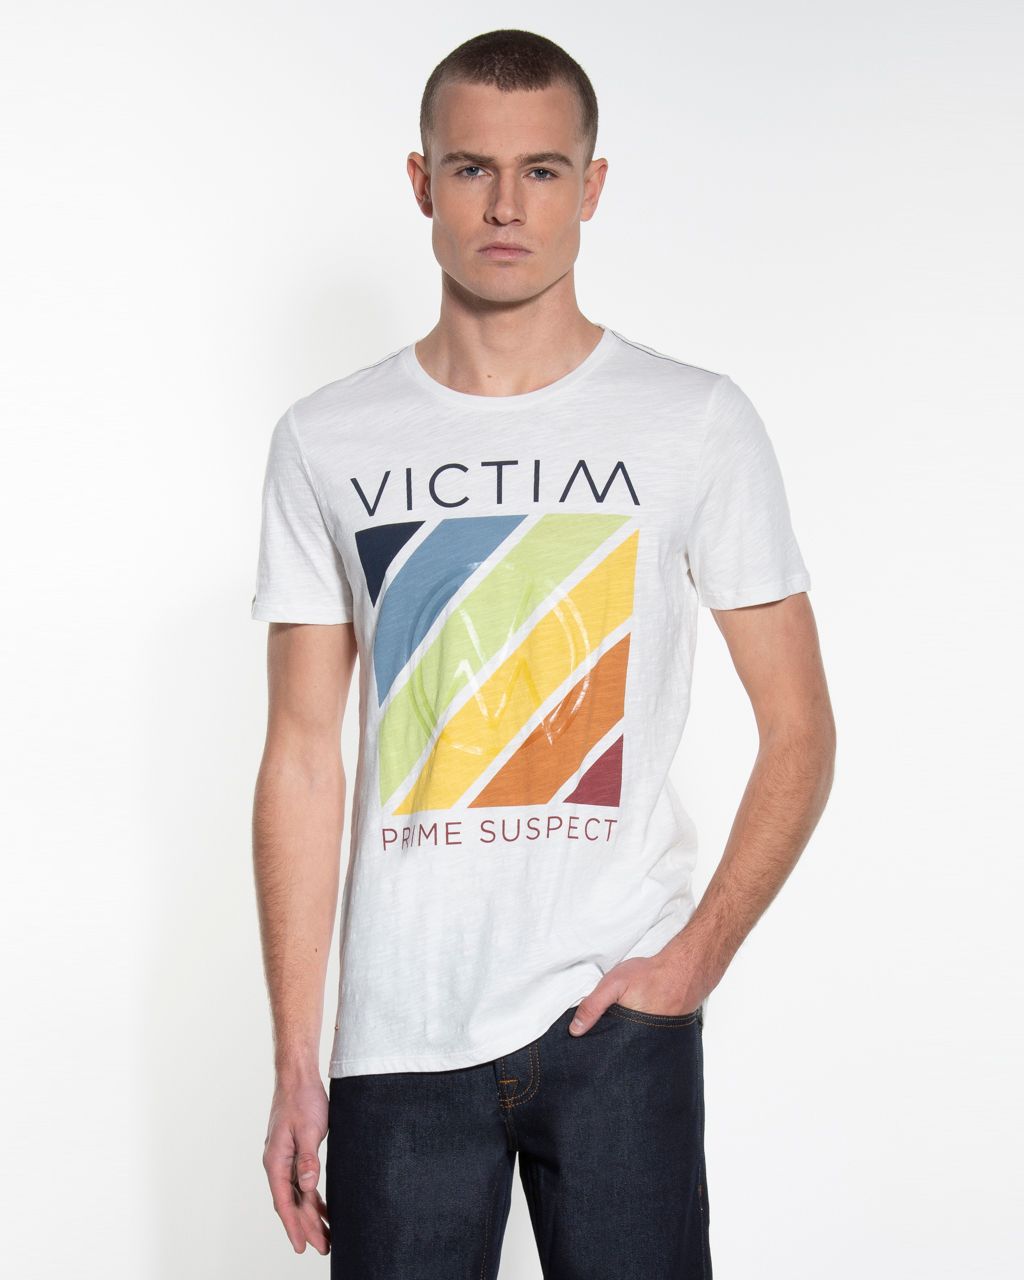 Victim T-shirt KM Off White 053671-001-L